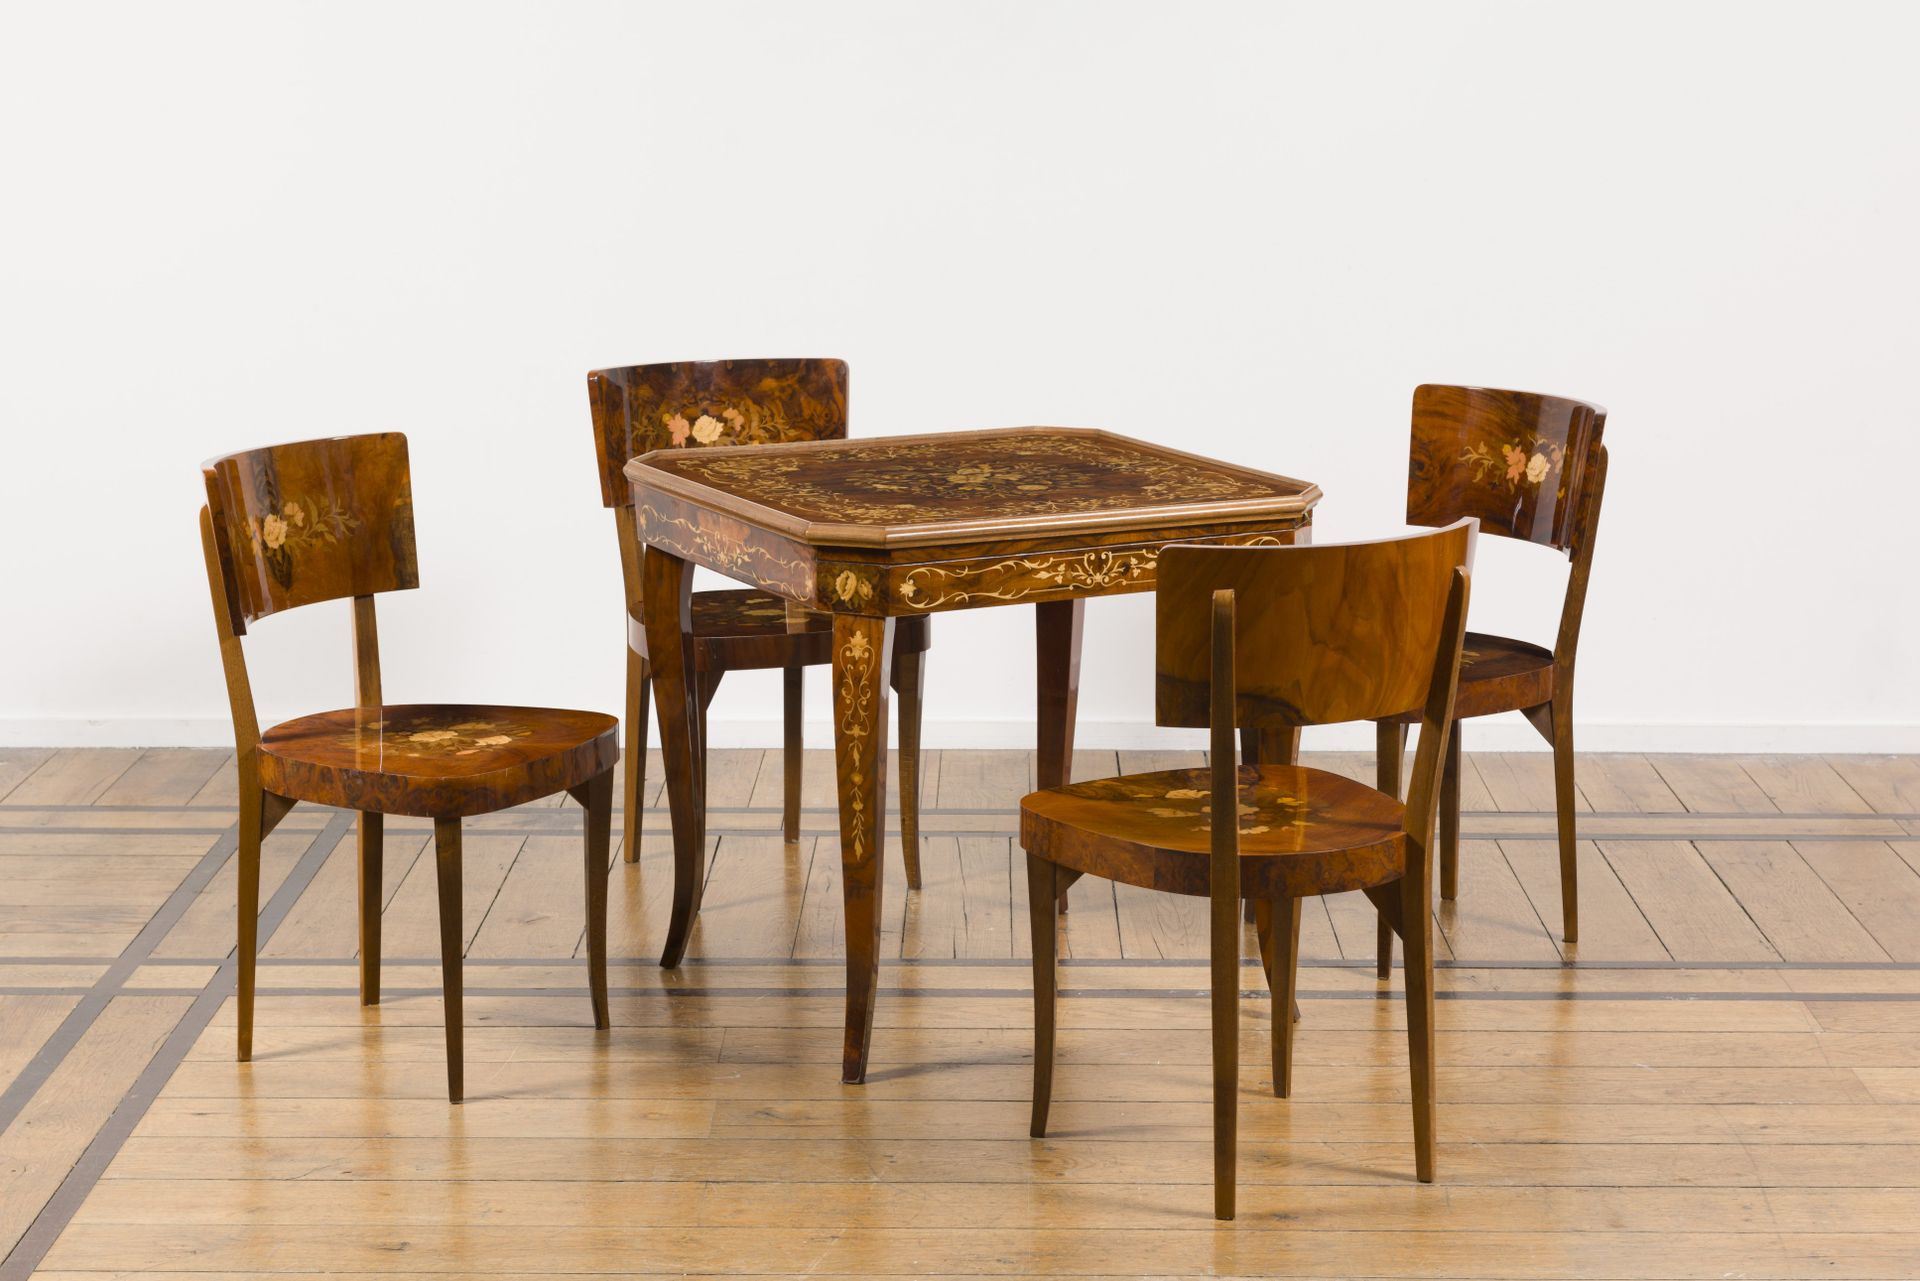 Null Tavolo da gioco e quattro sedie in legno e intarsio, 1990 ca.

Il piano del&hellip;